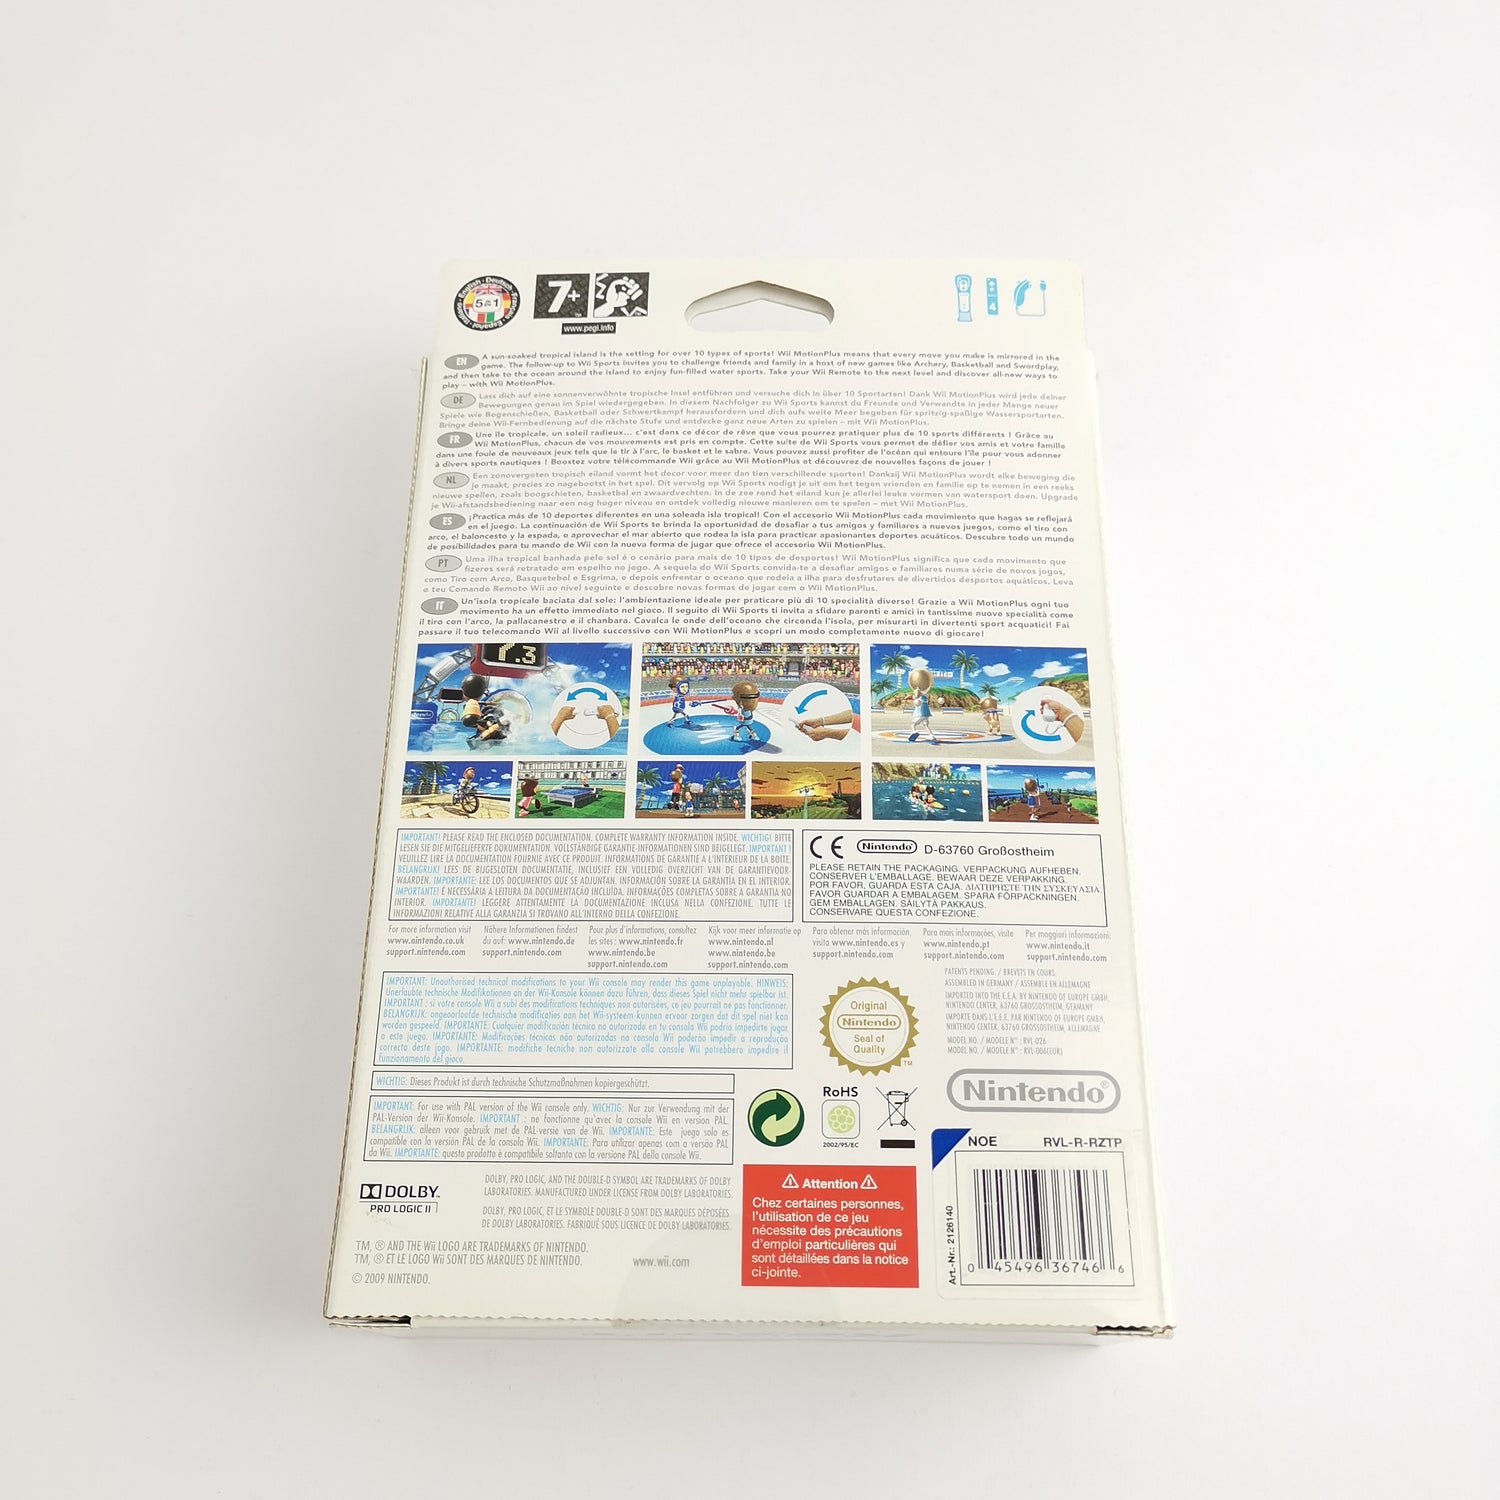 Nintendo Wii Spiel : Wii Sports Resort mit Motion Plus - OVP & Anleitung PAL